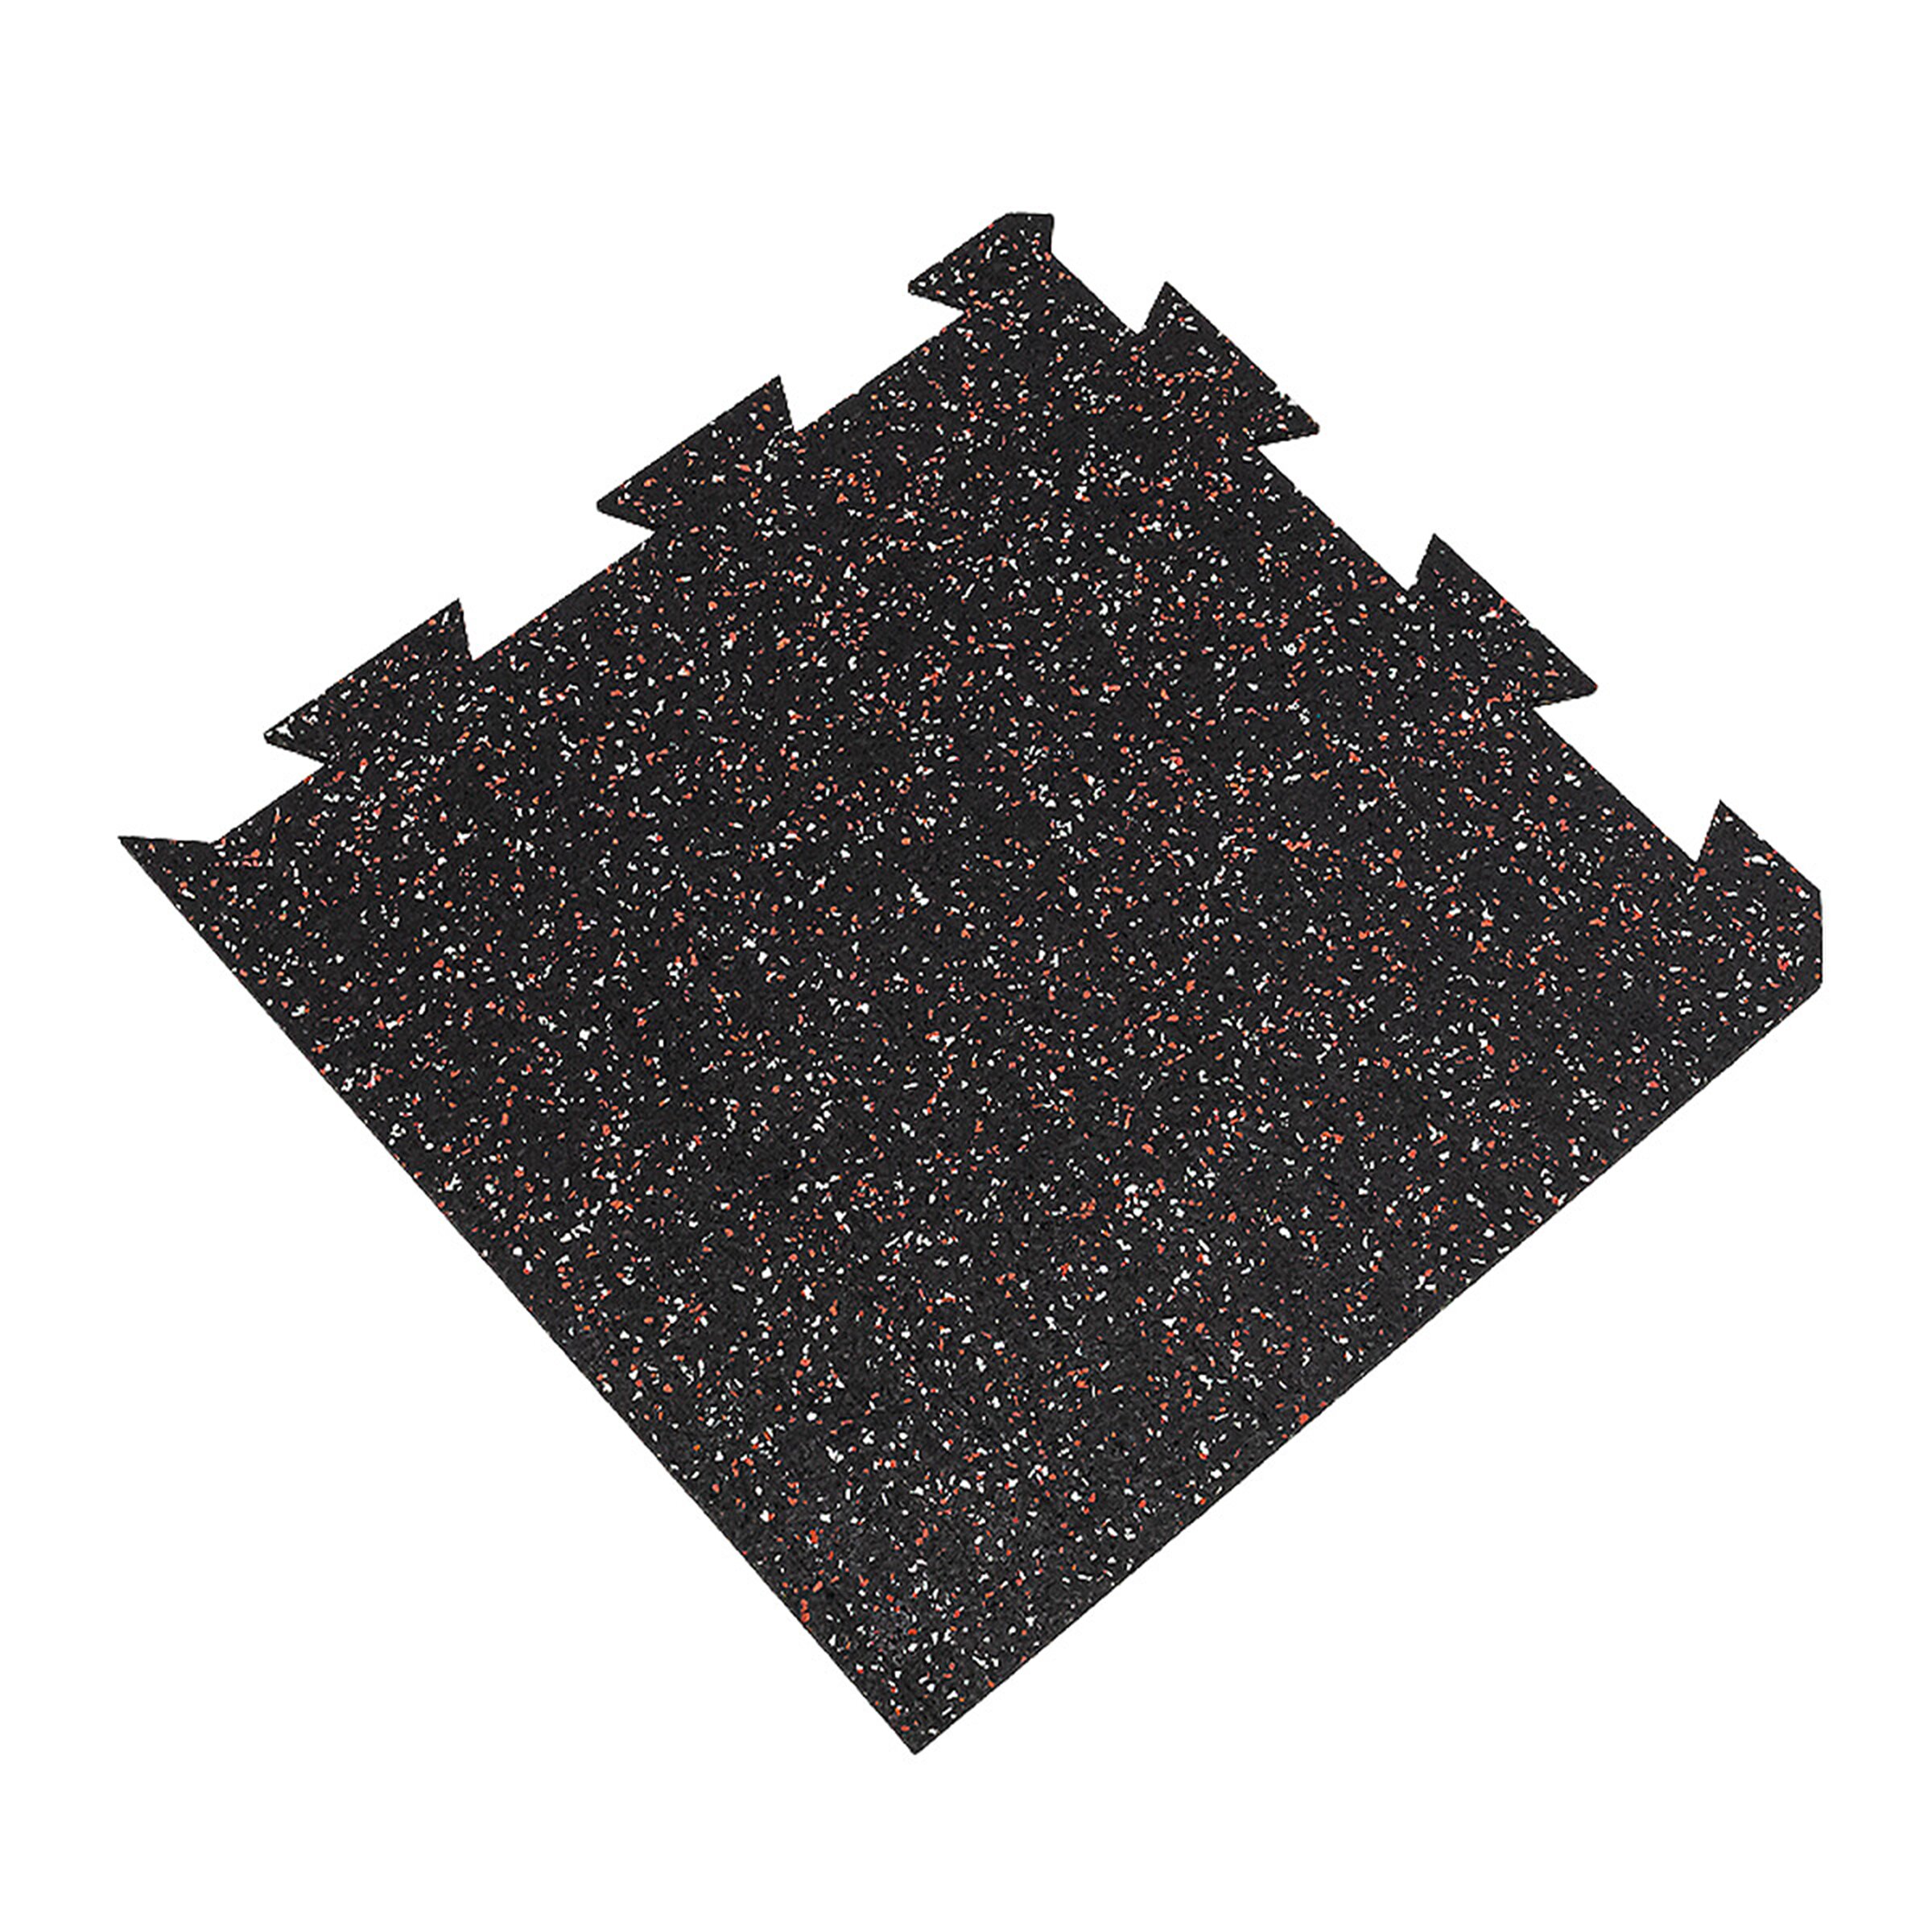 Čierno-bielo-červená gumová modulová puzzle dlažba (roh) FLOMA FitFlo SF1050 - dĺžka 50 cm, šírka 50 cm, výška 0,8 cm